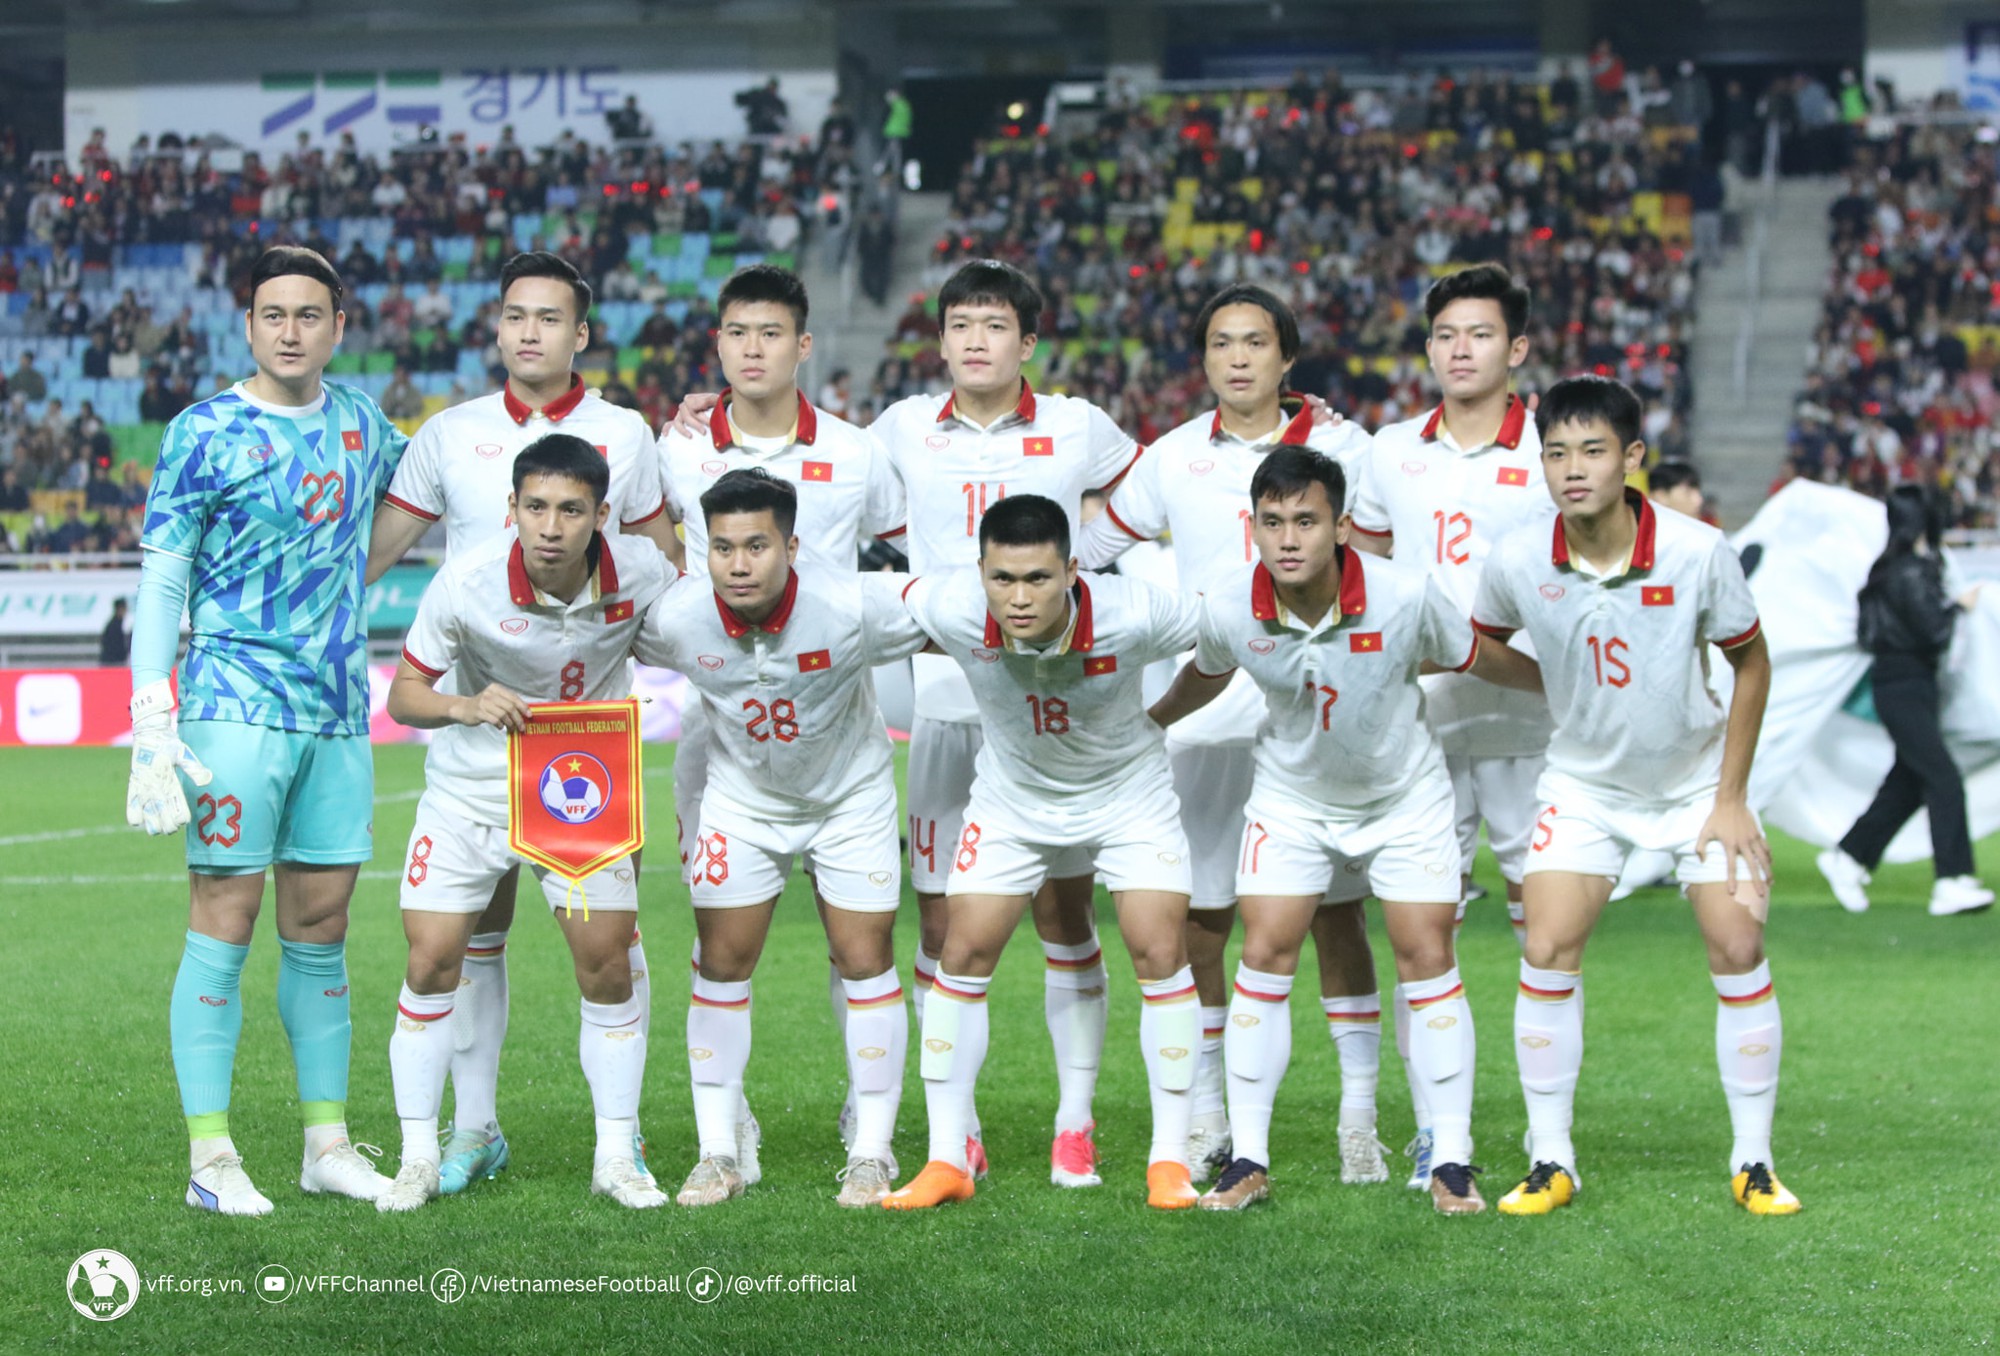 Mua vé xem đội tuyển Việt Nam đấu Iraq ở vòng loại World Cup bằng cách nào? - Ảnh 2.